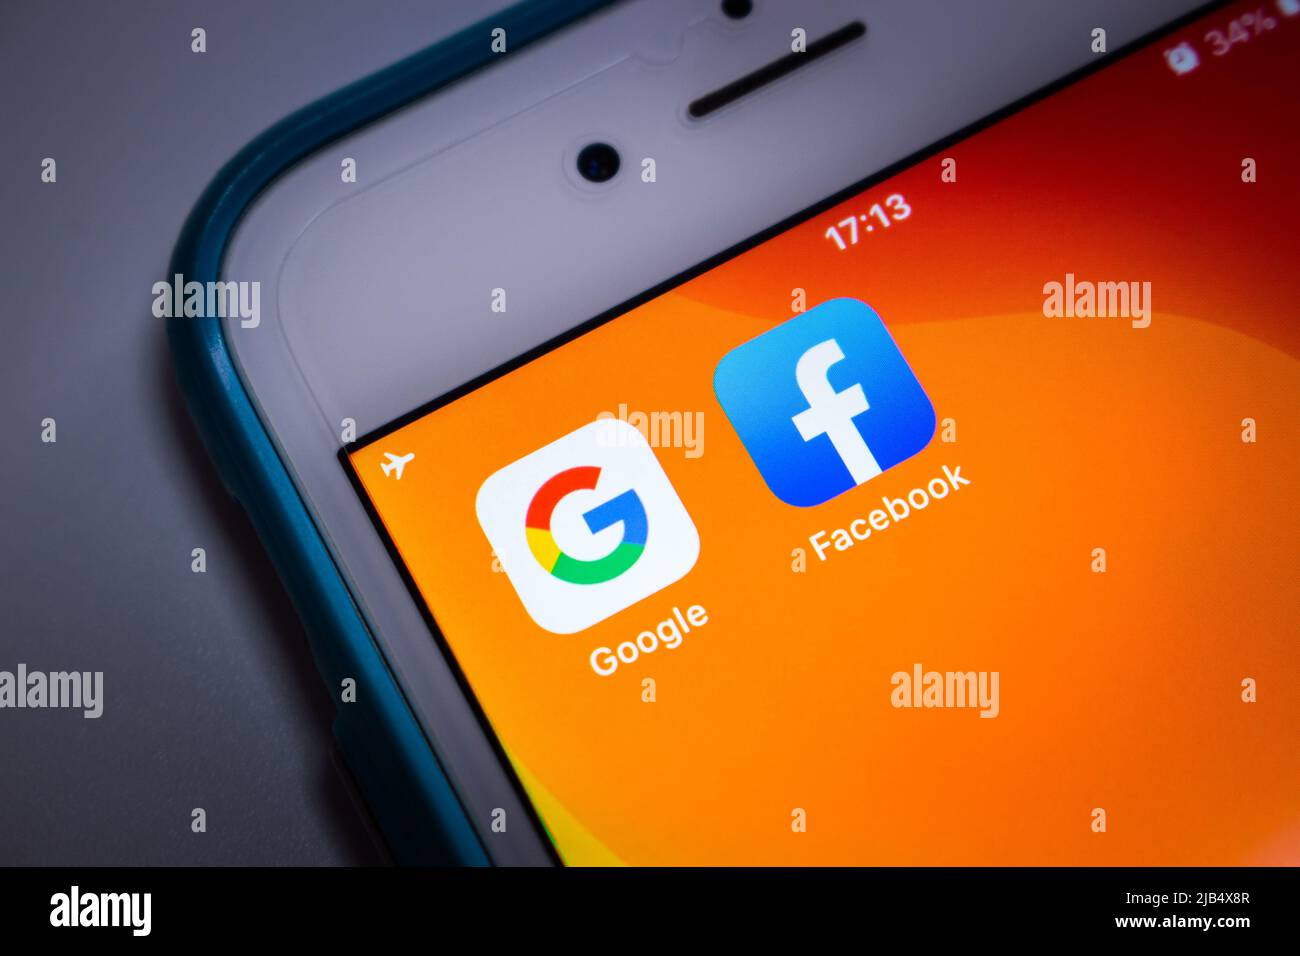 Kumamoto, Japan - May 21 2020 : Google & Facebook icons on orange iPhone screen on white background. Stock Photo